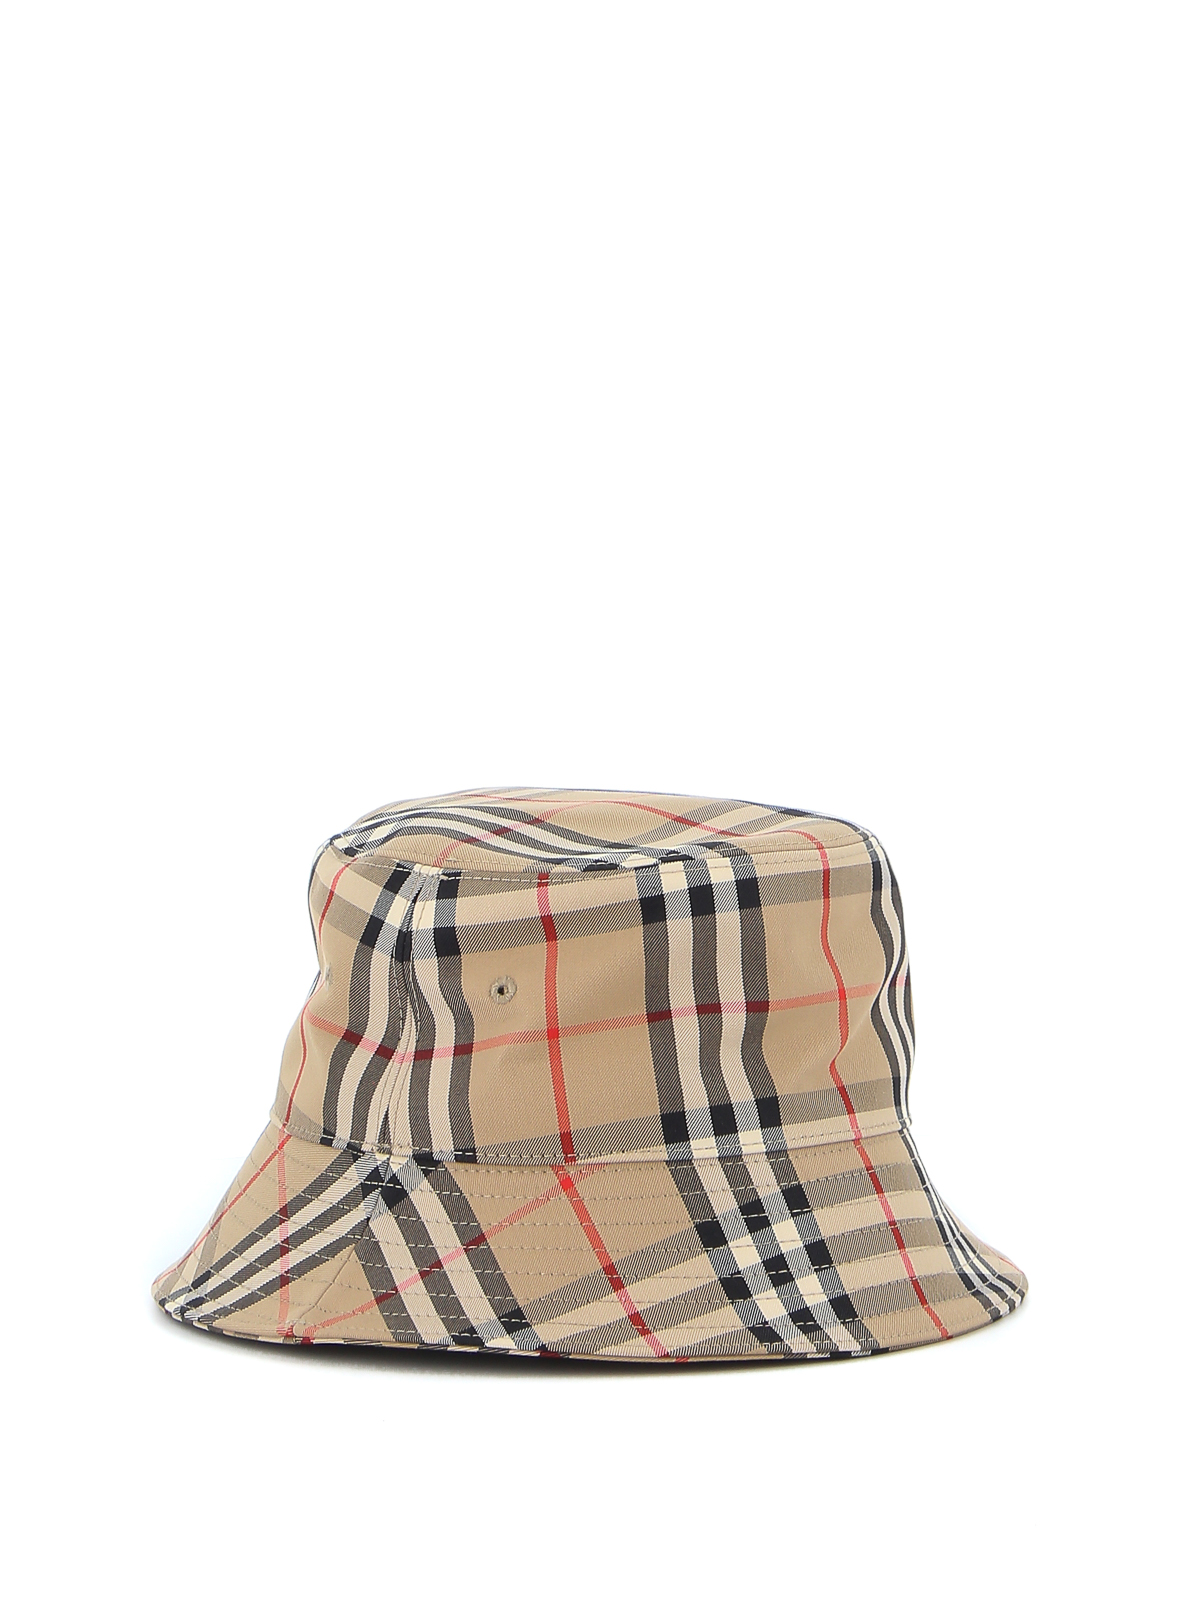 Oh jee Aanwezigheid Gezichtsvermogen Hats & caps Burberry - Vintage Check print bucket hat - 8026927